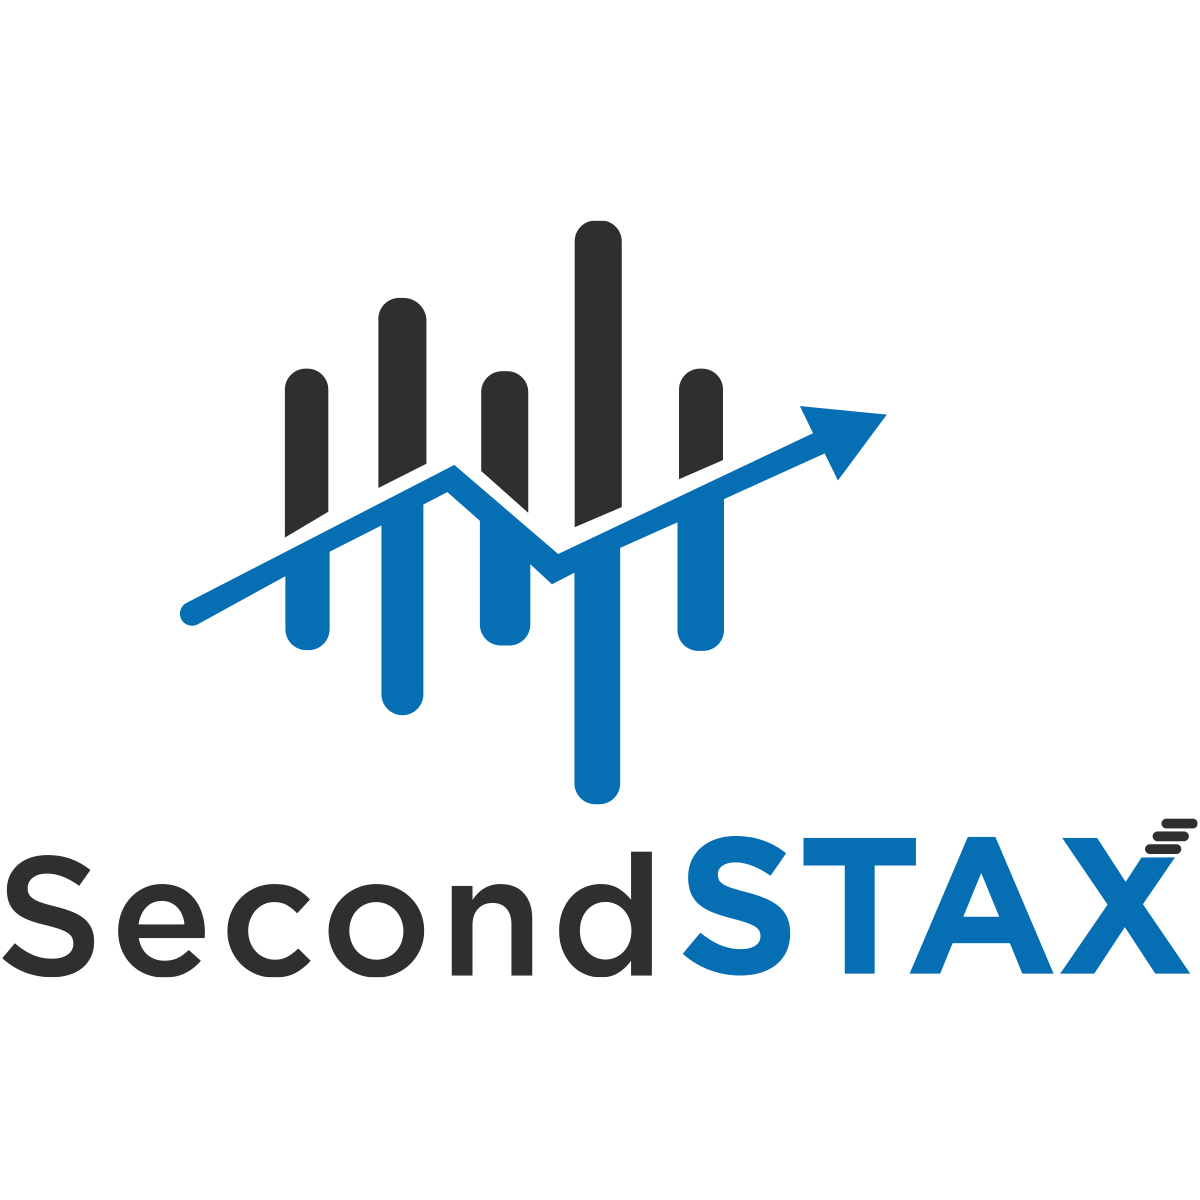 SecondSTAX lance le premier portail transfrontalier de gestion des commandes sur les marchés de capitaux africains et annonce un financement de pré-amorçage de 1,6 million de dollars